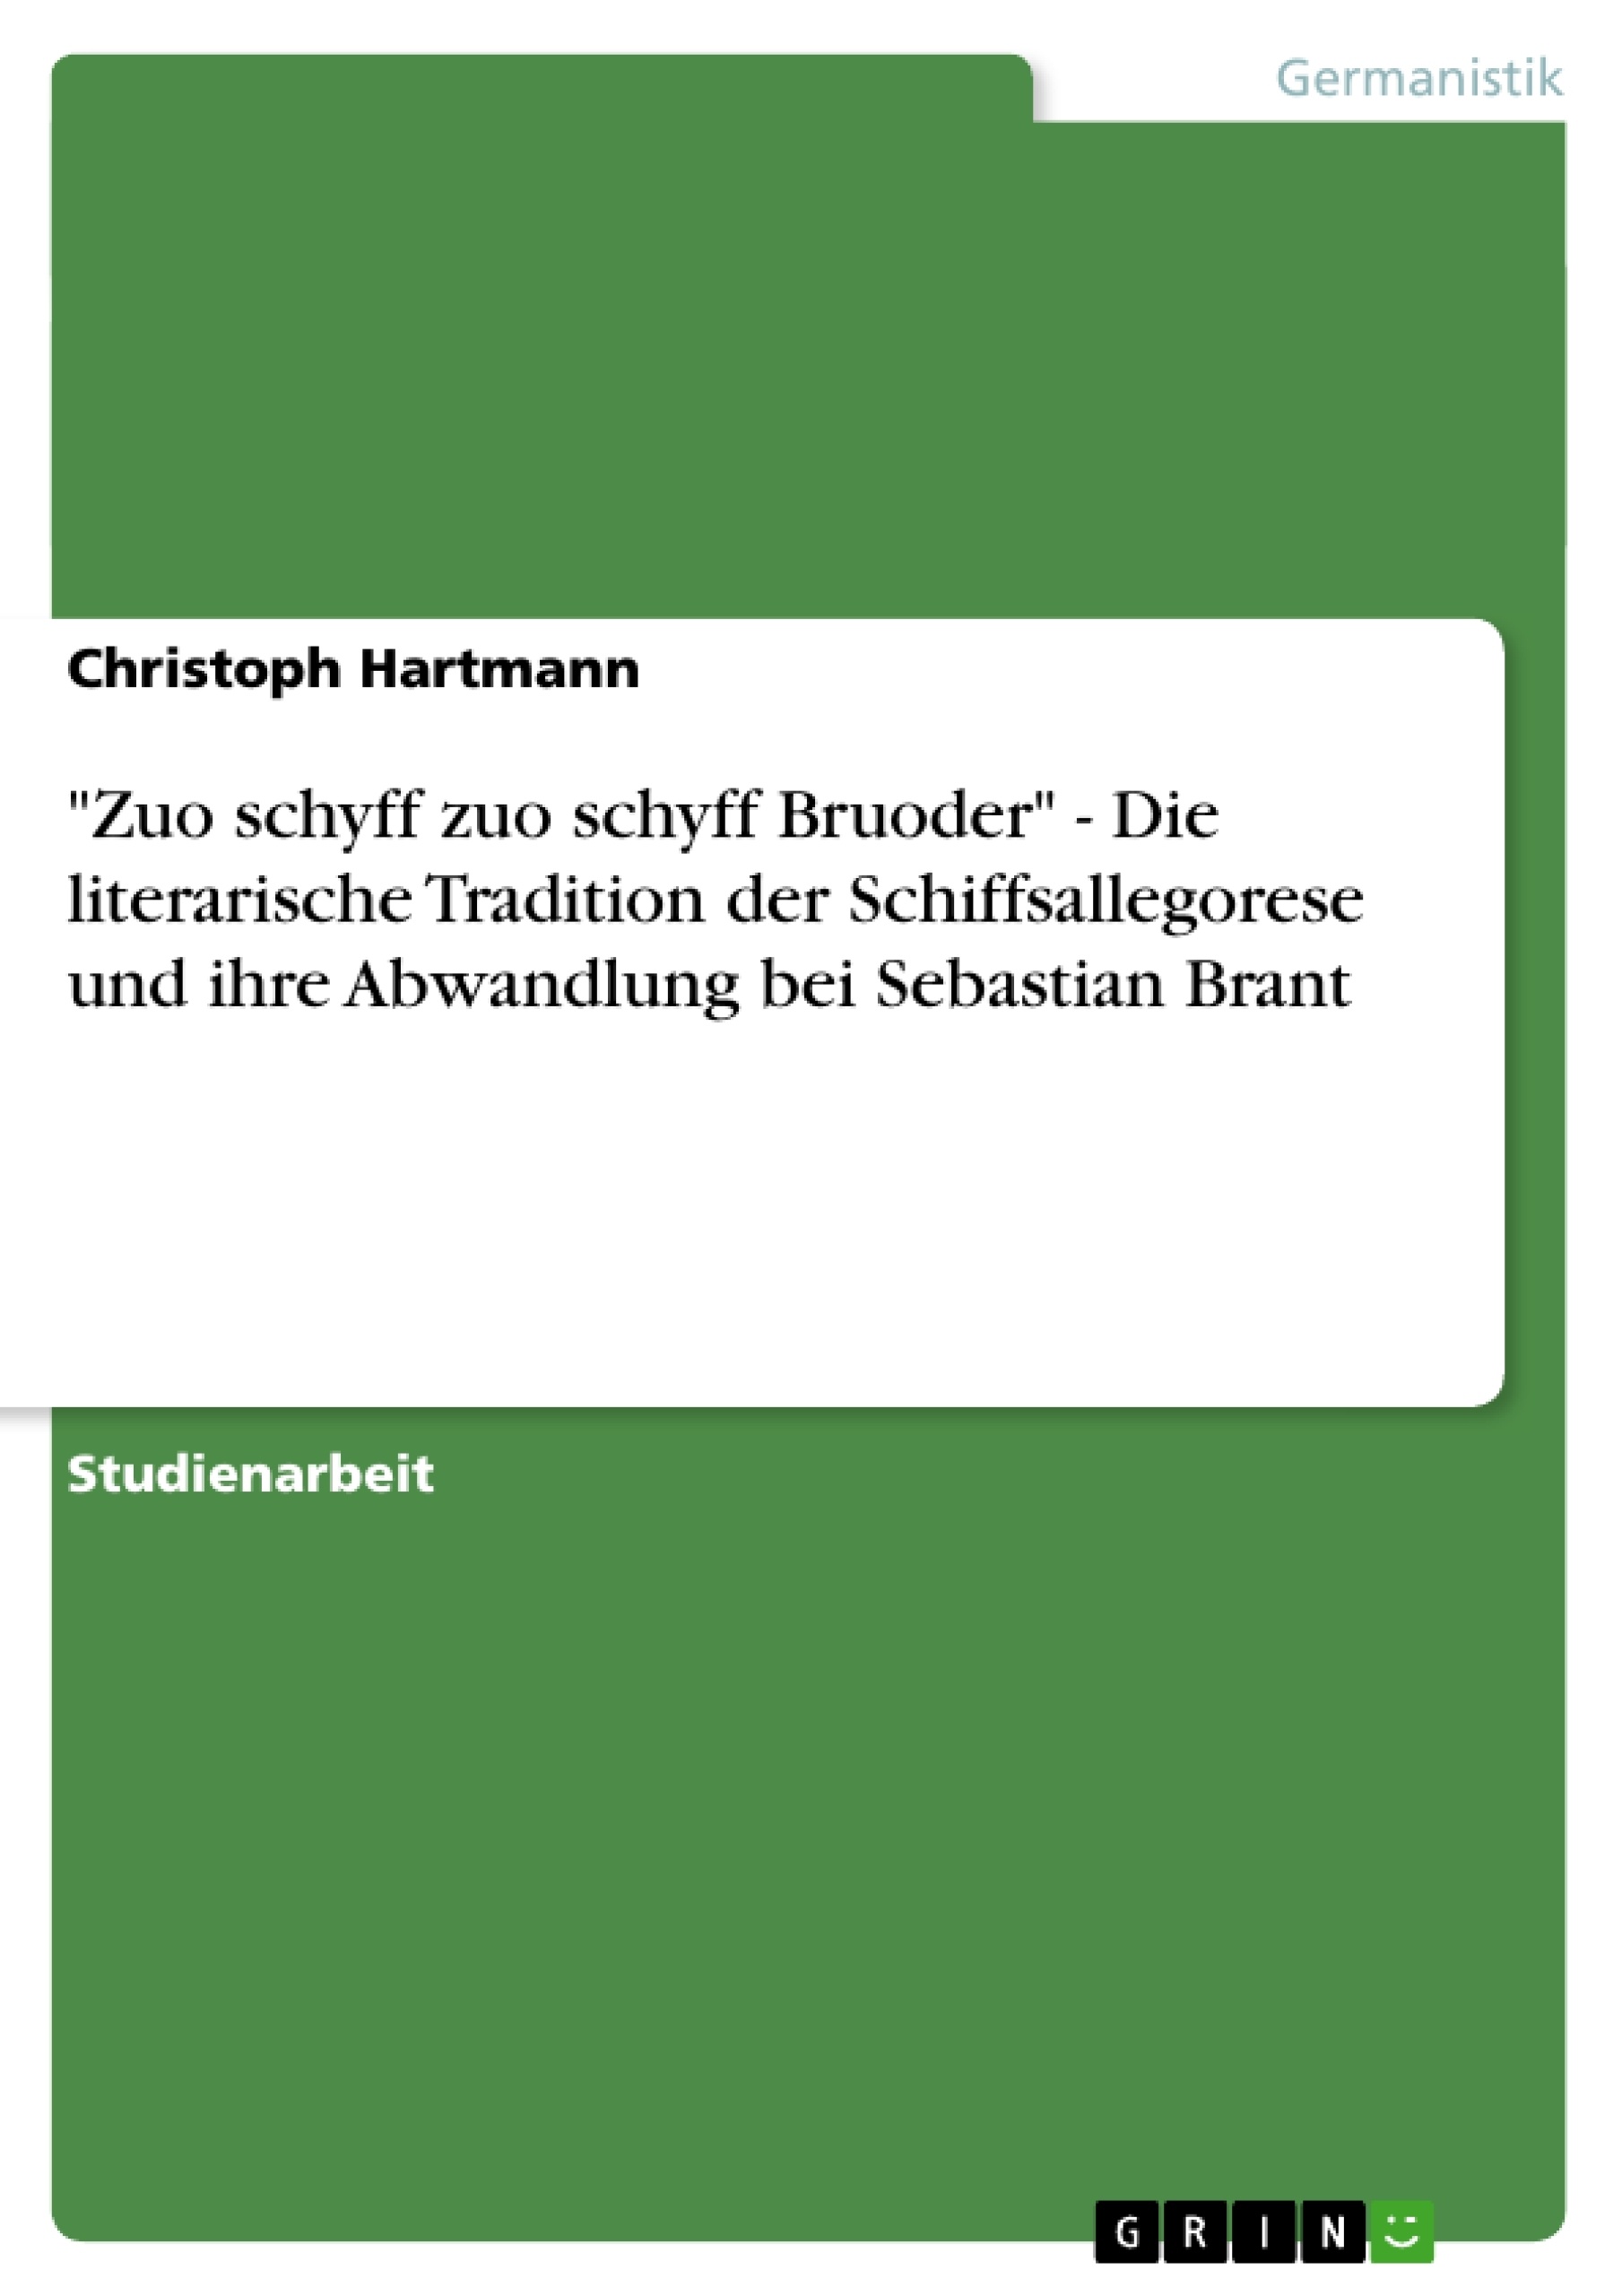 Titre: "Zuo schyff zuo schyff Bruoder" - Die literarische Tradition der Schiffsallegorese und ihre Abwandlung bei Sebastian Brant